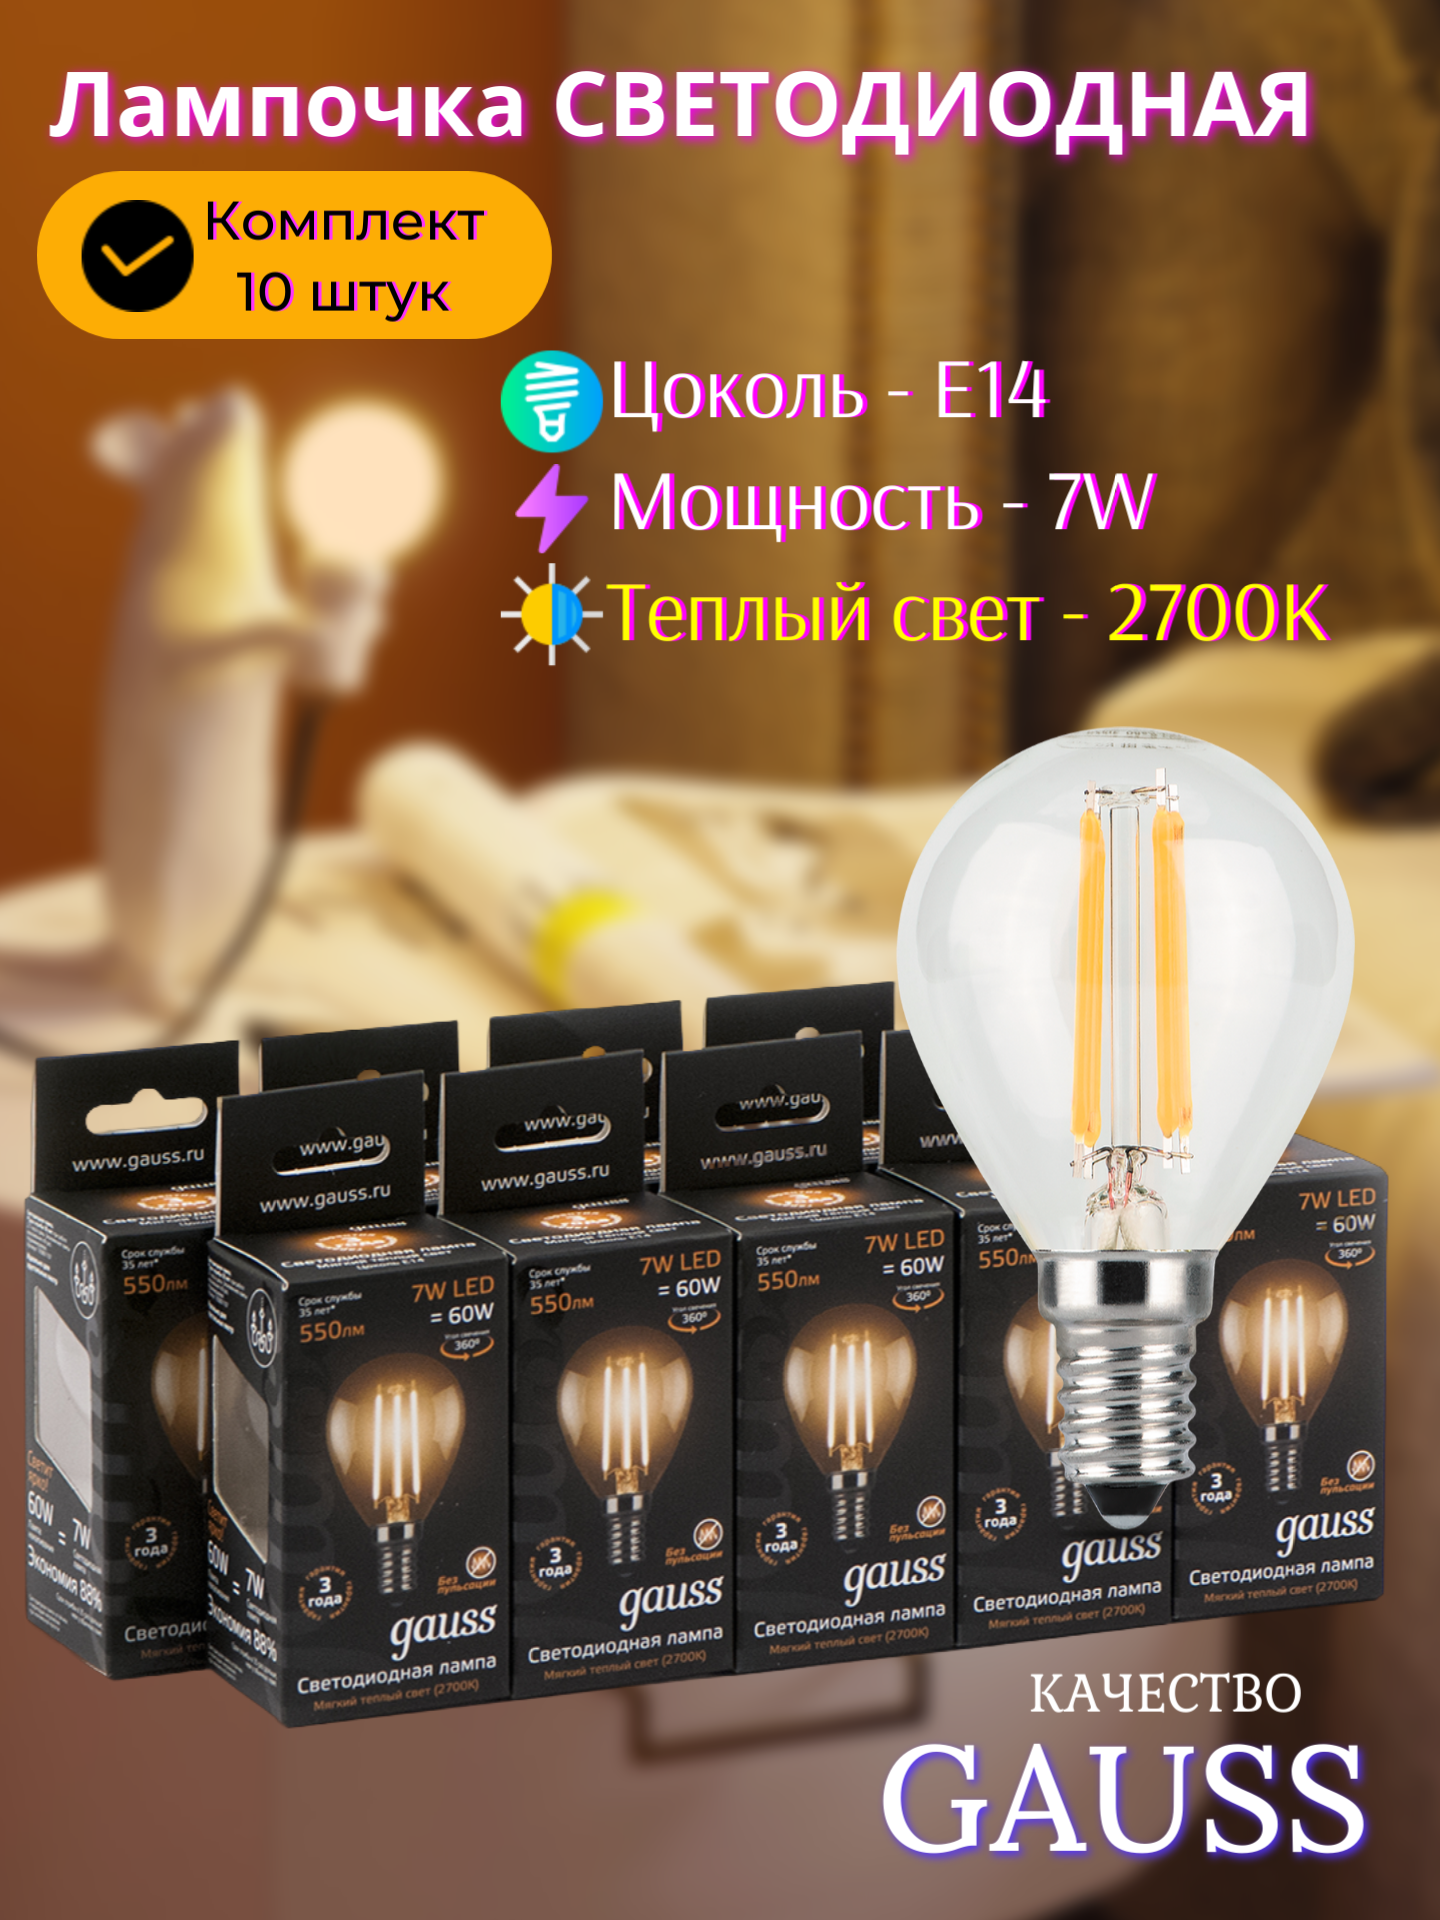 Лампочка светодиодная E14 Шар 7W теплый свет 2700K упаковка 10 шт. Gauss Filament